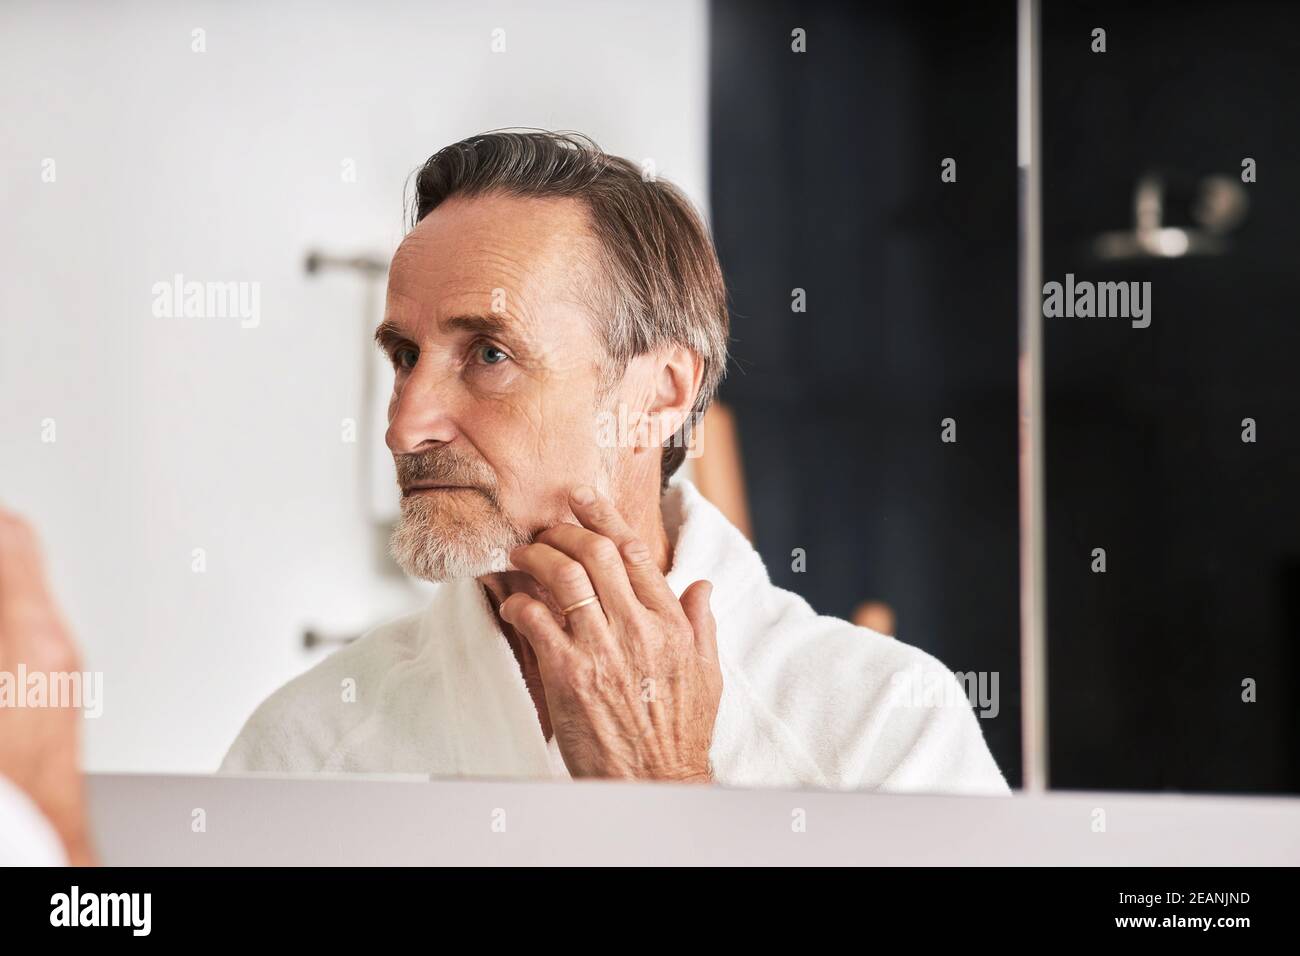 Homme âgé touchant son visage dans la salle de bains depuis un miroir. Homme en peignoir regardant sa réflexion Banque D'Images